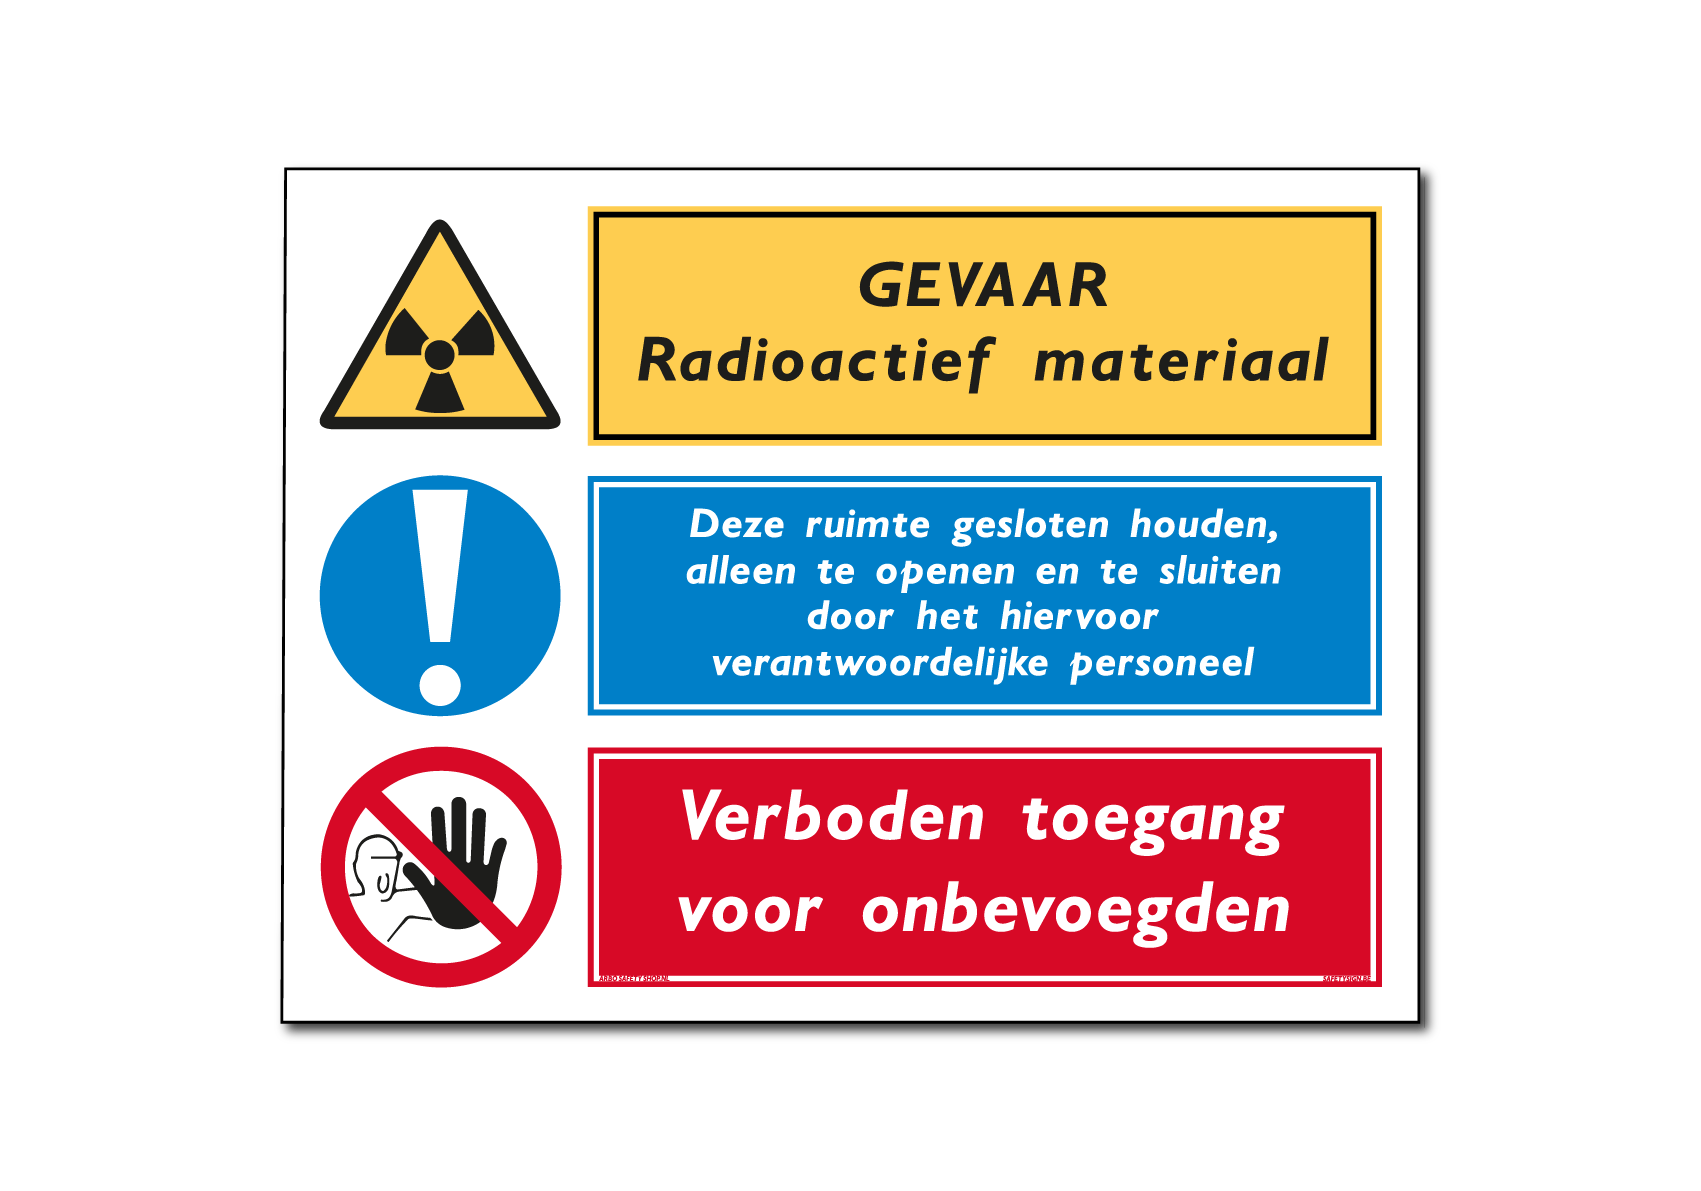 Waarschuwing radioactief materiaal / deze ruimte gesloten houden / verboden toegang voor onbevoegden combinatiebord / sticker